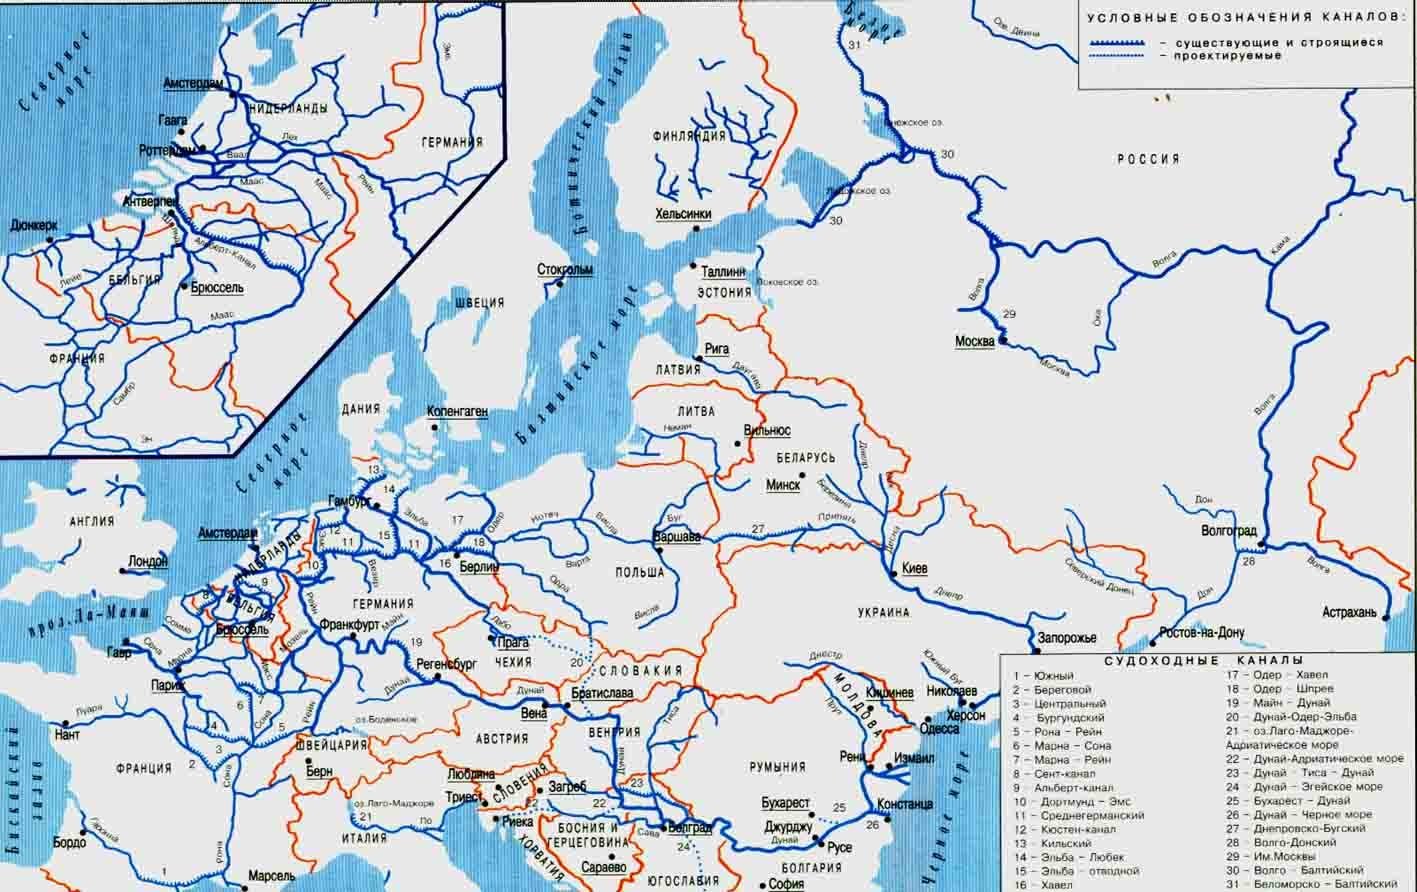 Реки европы. Карта речных путей Европы. Карта водных путей Европы. Карта судоходных рек Европы. Каналы Европы судоходные на карте.